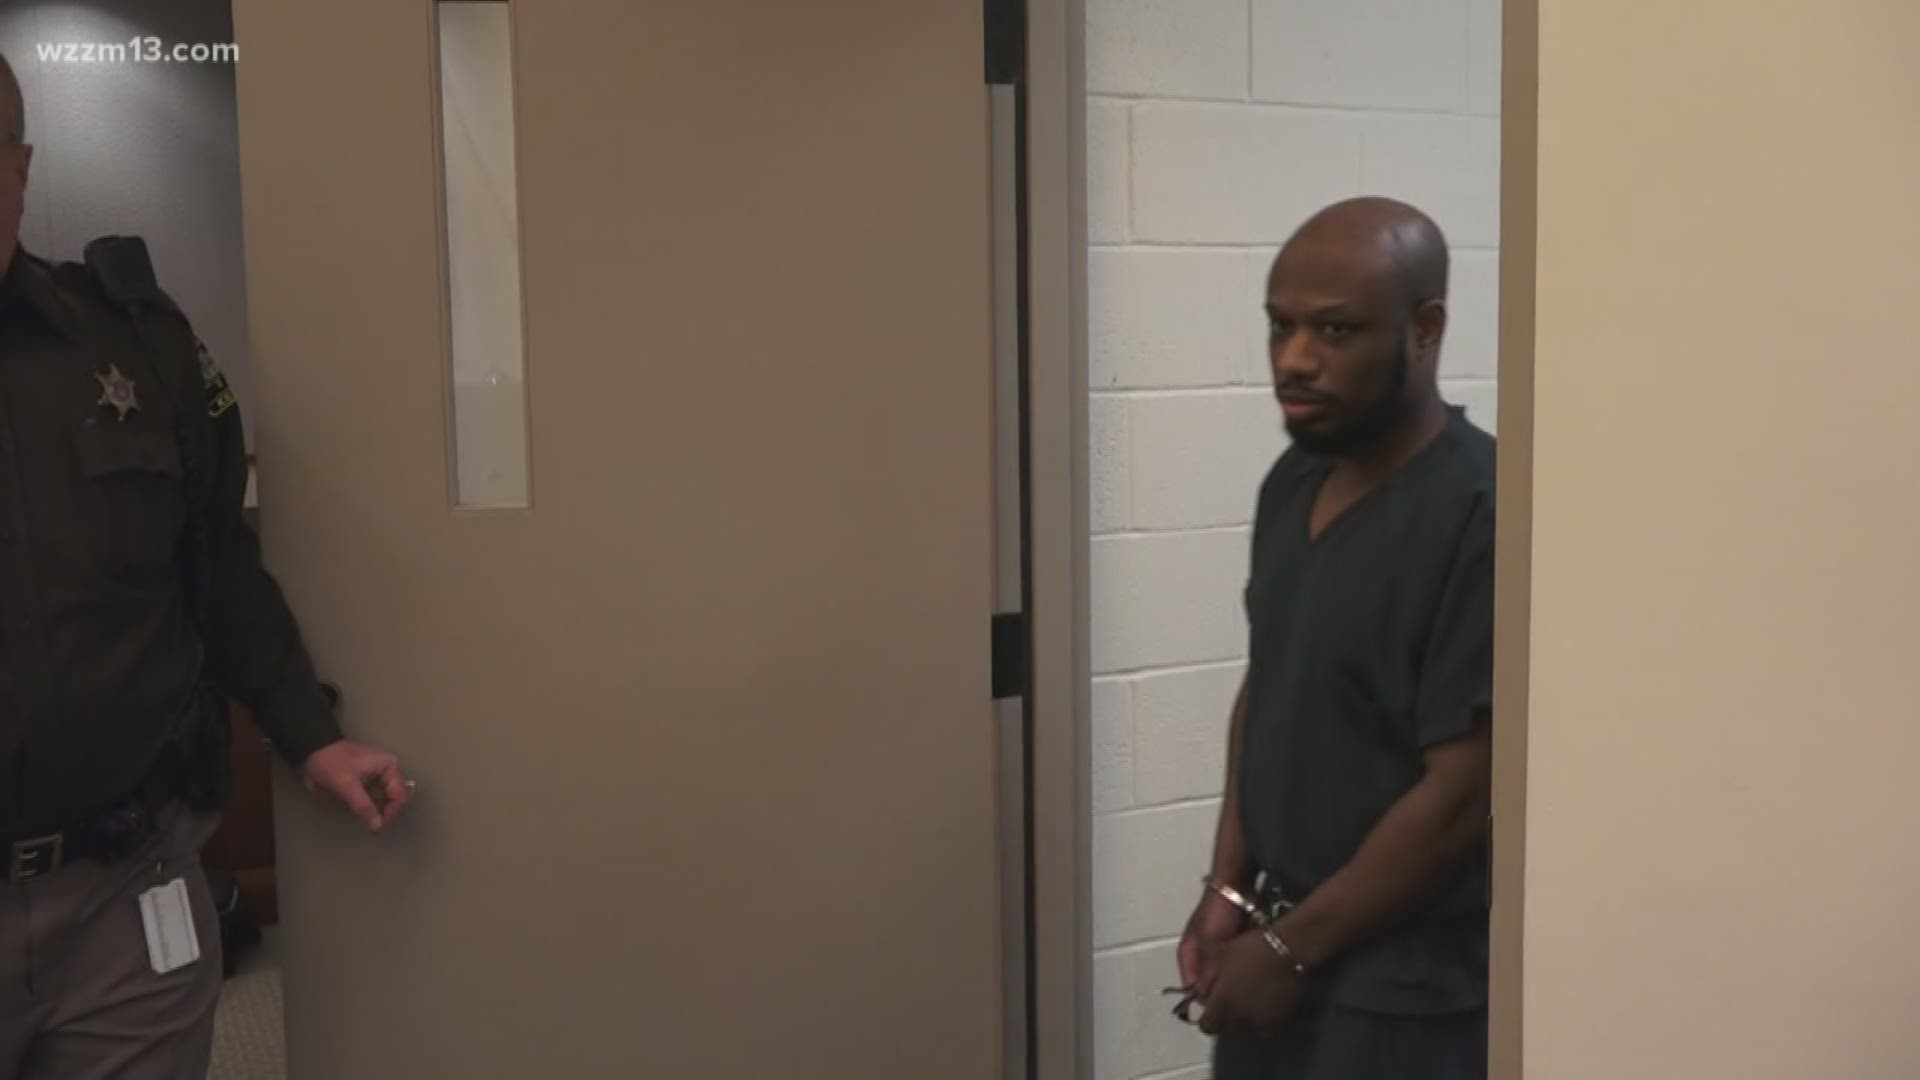 Juvenile lifer sentenced again for '95 murder